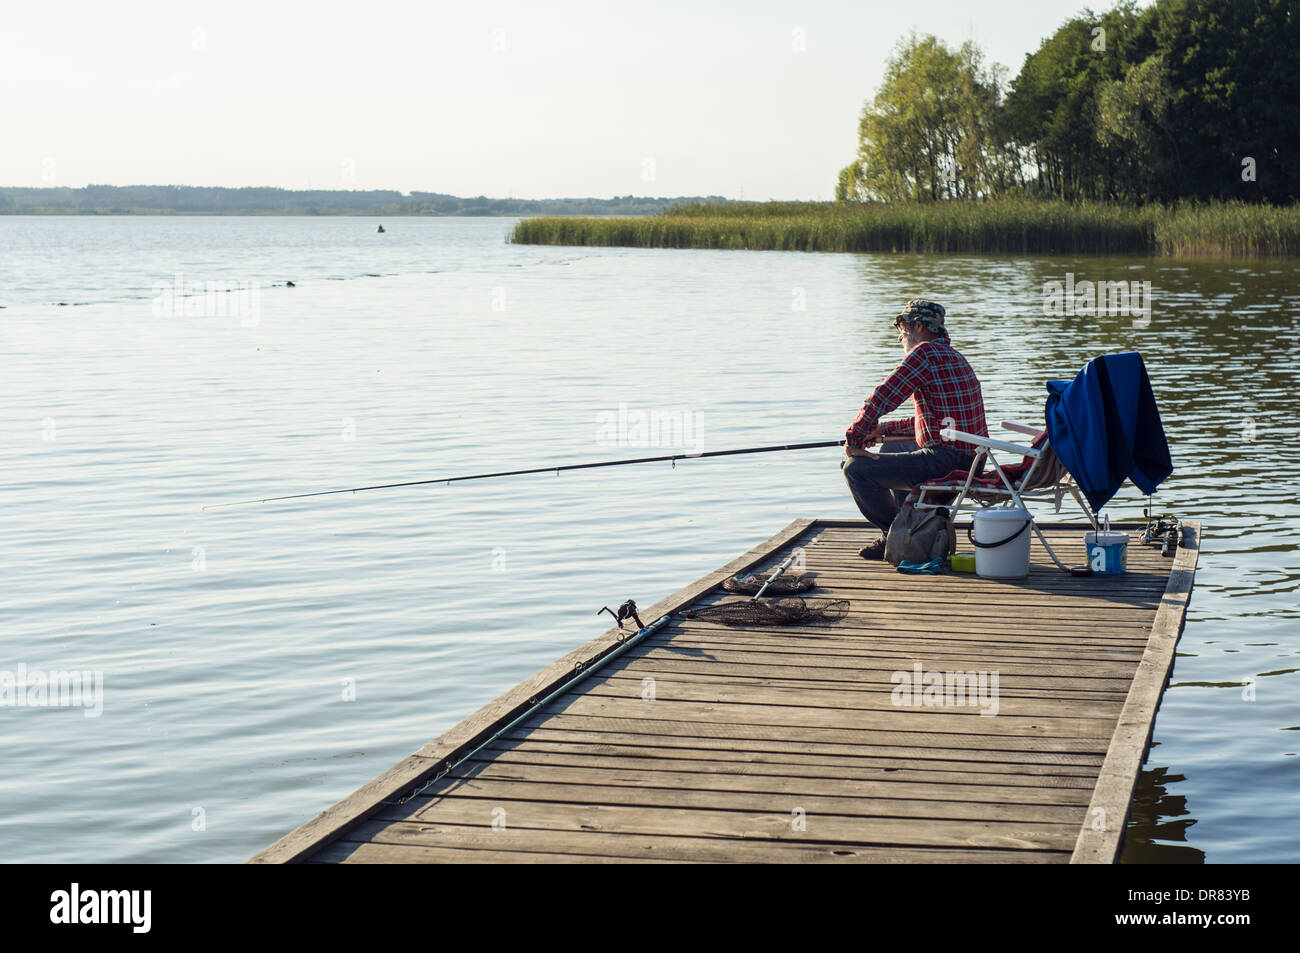 La pêche sur un lac de l'homme Banque D'Images